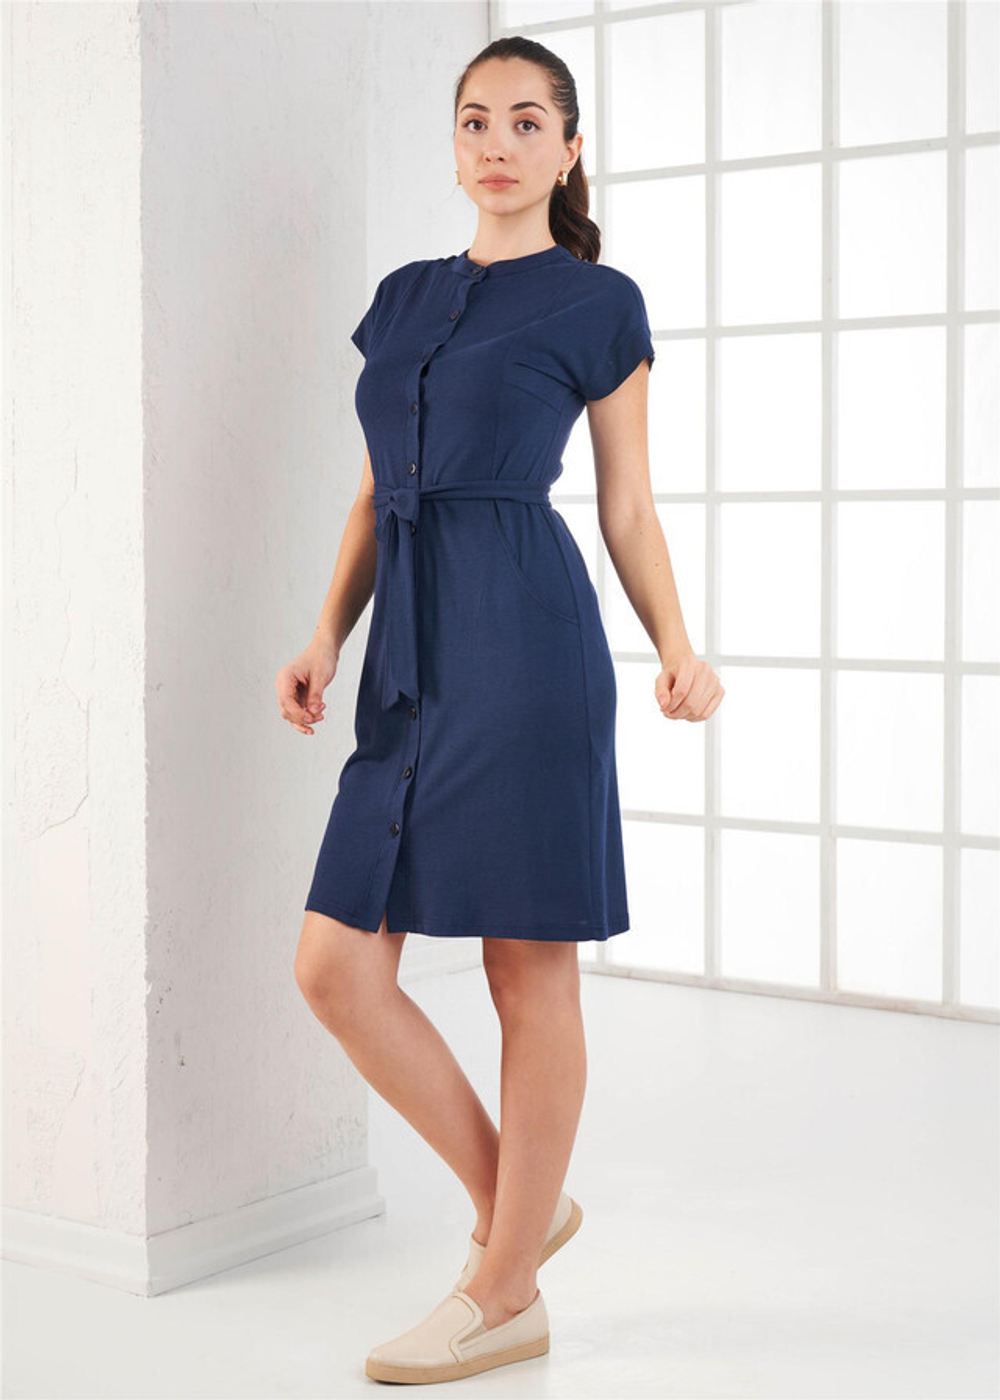 RELAX MODE / Платье женское летнее повседневное на пуговицах с поясом - 45522